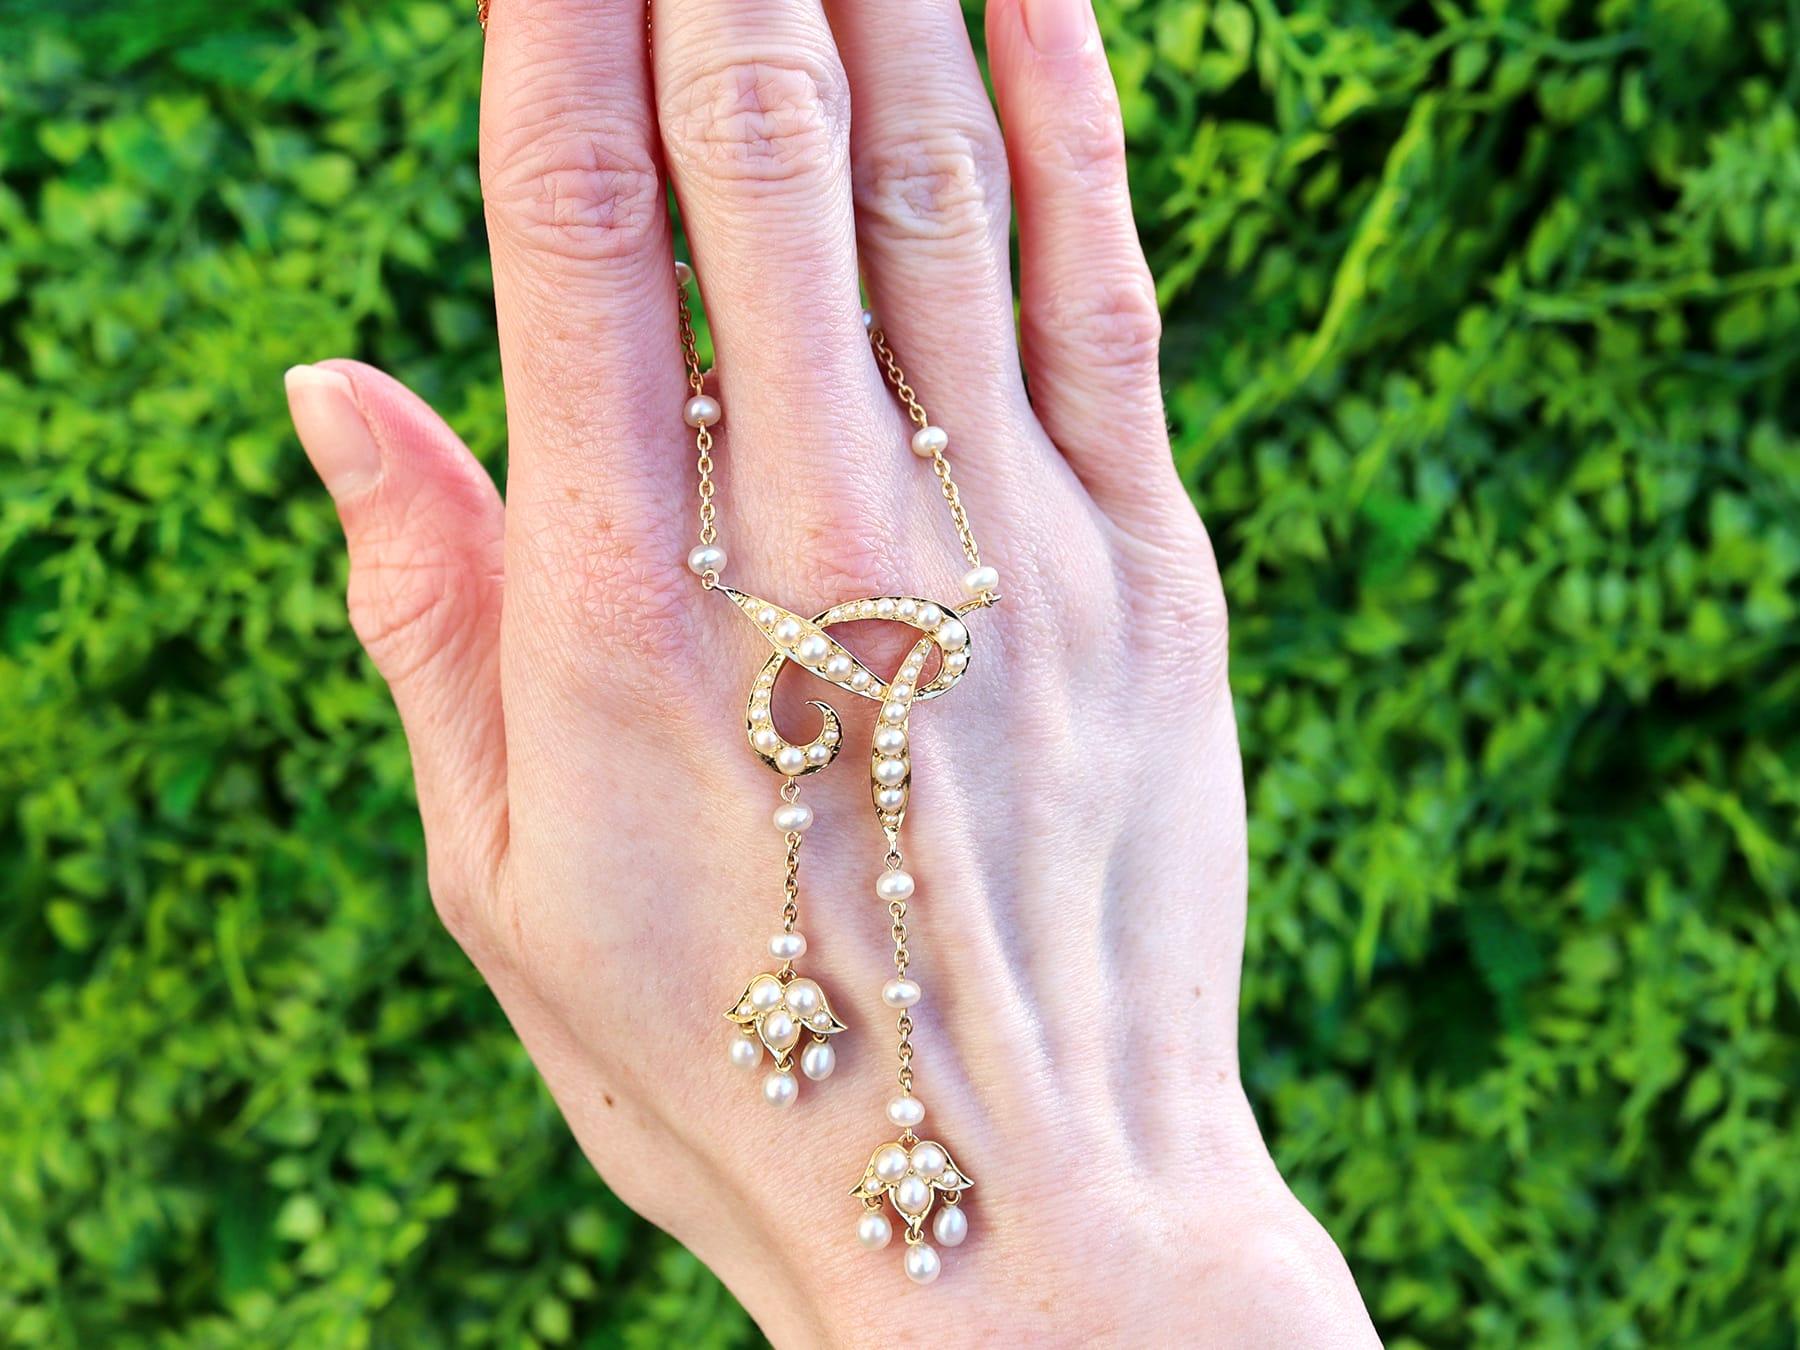 Eine feine und beeindruckende antike Perlenkette aus 18 Karat Gelbgold; Teil unserer Perlenschmuck-Kollektion.

Diese feine und beeindruckende Perlenkette ist aus 18 Karat Gelbgold gefertigt.

Dieser ungewöhnliche und begehrenswerte Anhänger ist mit